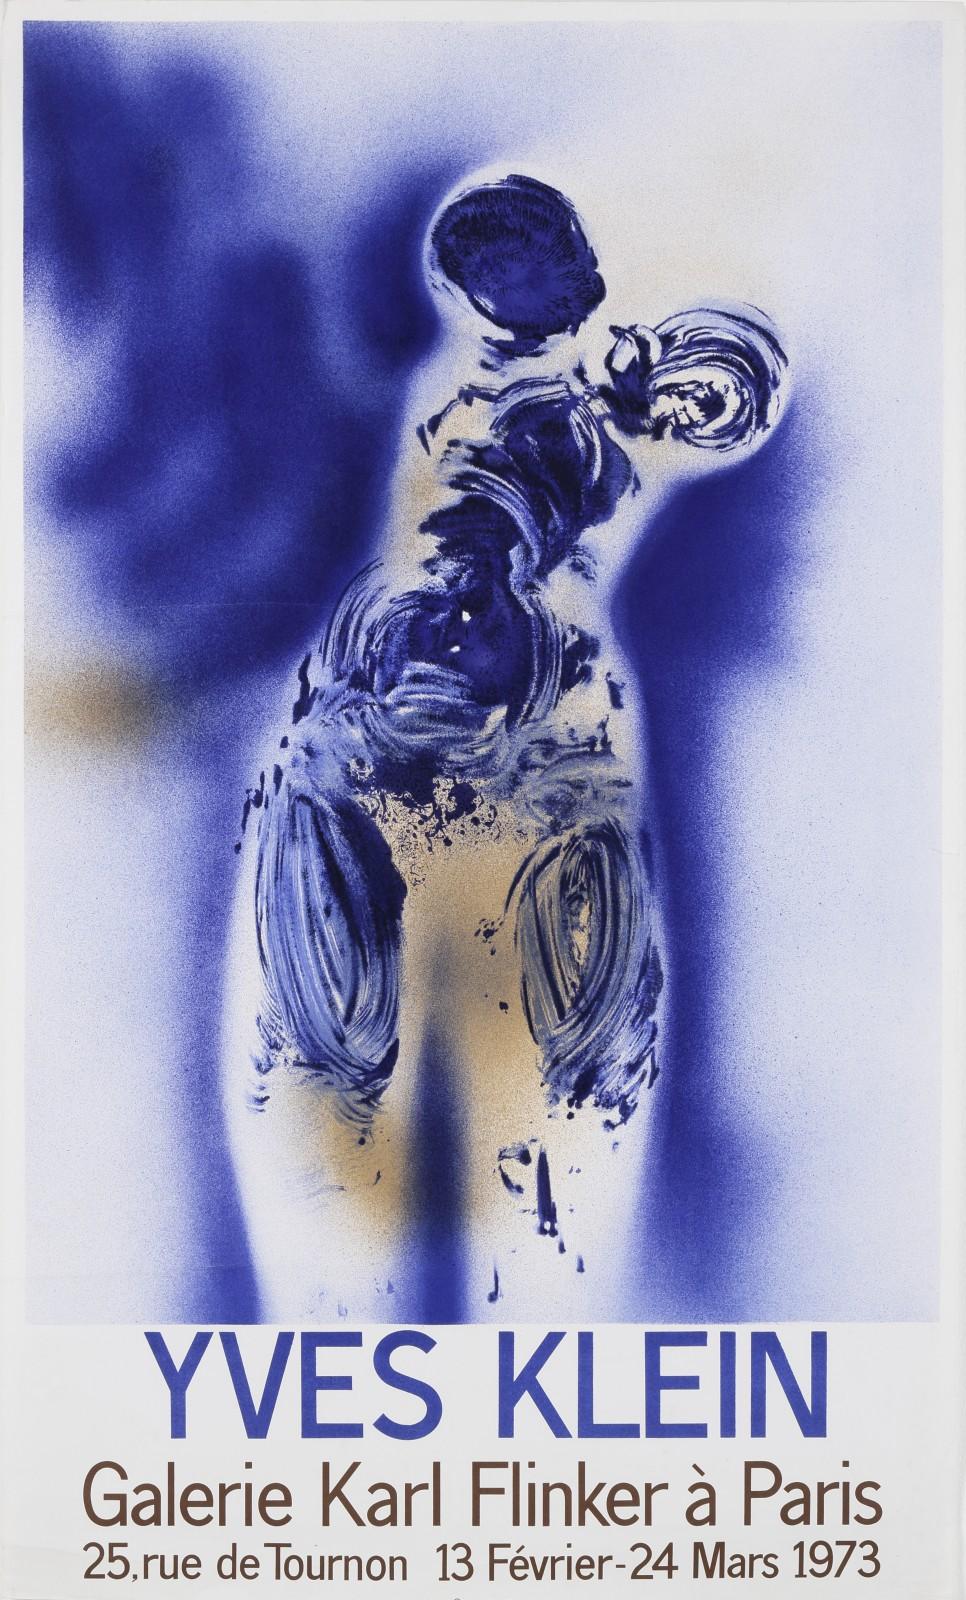 Poster of the exhibition "Yves Klein", Galerie Karl Flinker, 1973